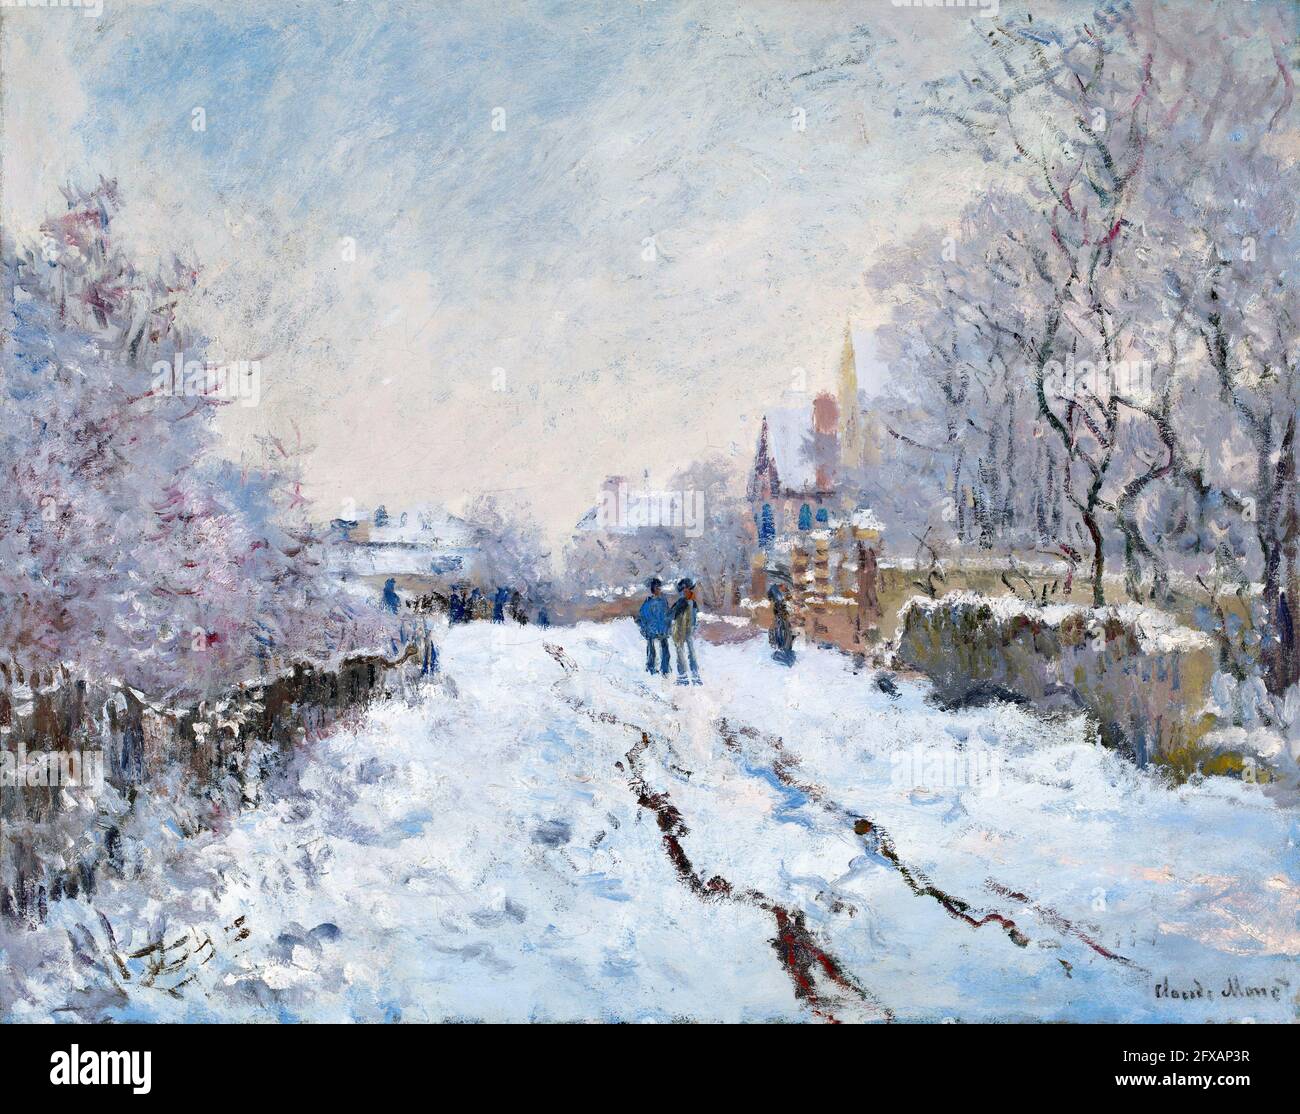 Schneeszene in Argenteuil von Claude Monet (1840-1926), Öl auf Leinwand, 1875 Stockfoto